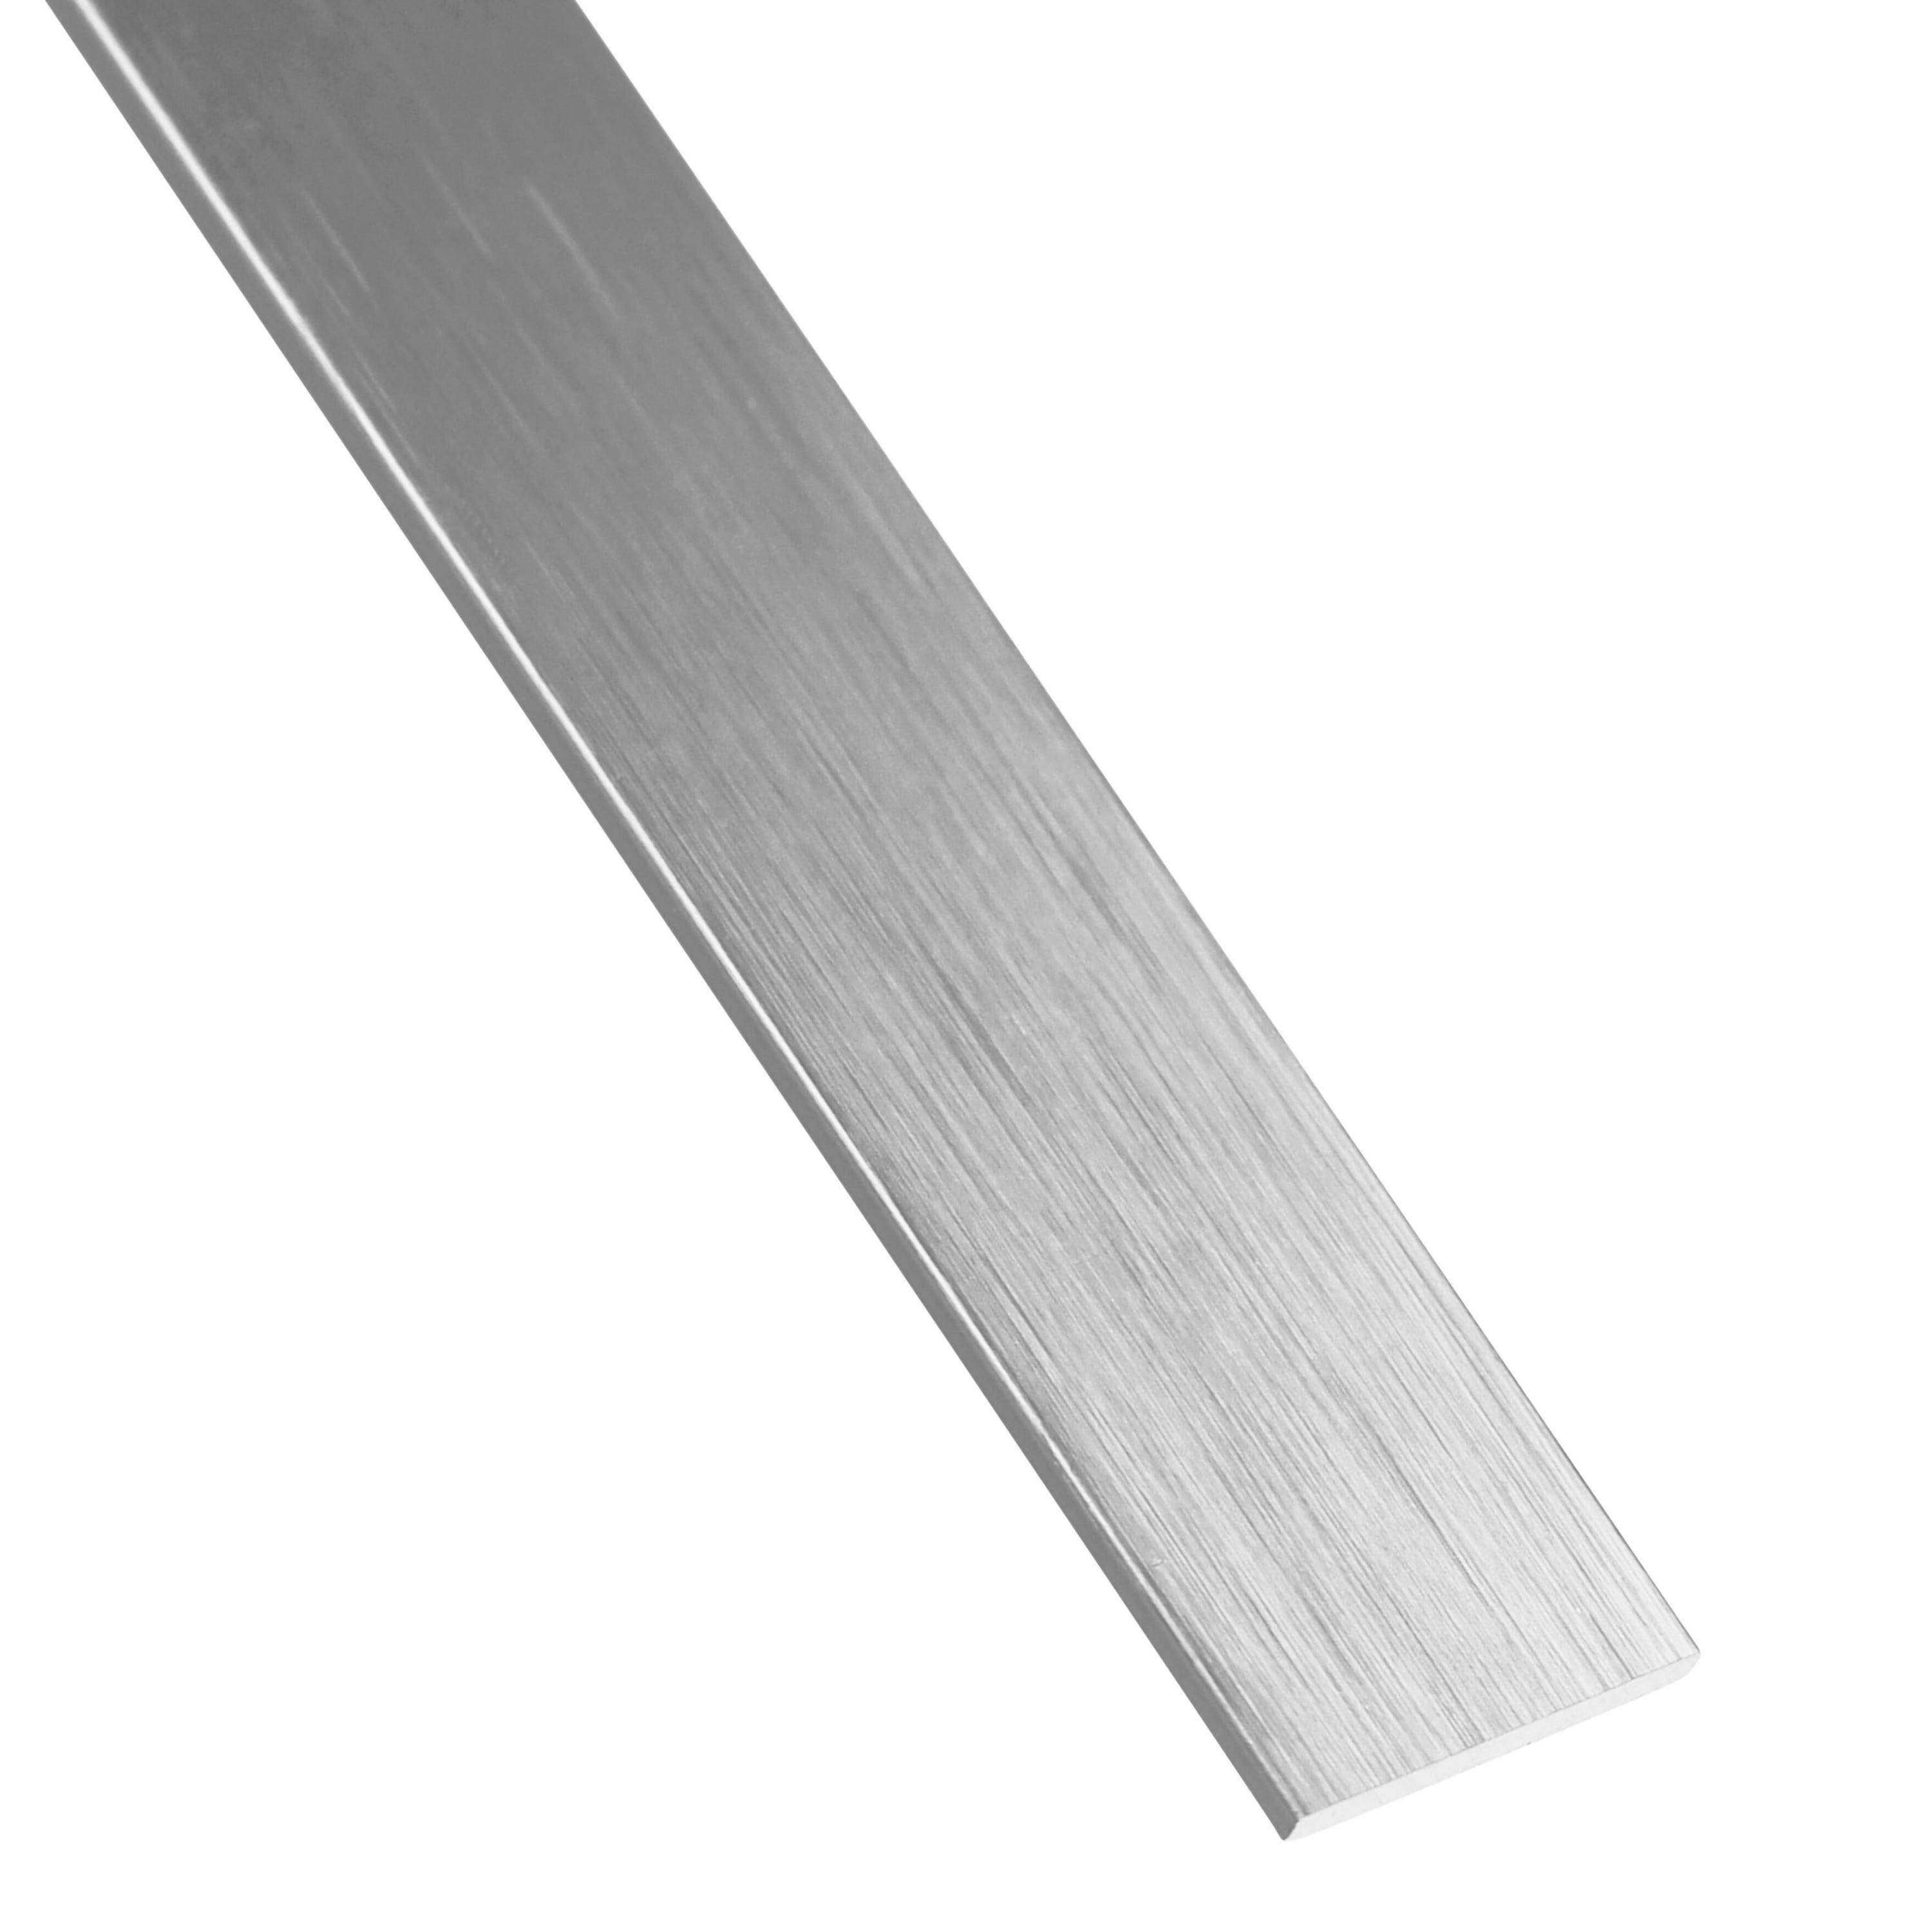 Plat aluminium anodisé argent lisse, L.2600 mm